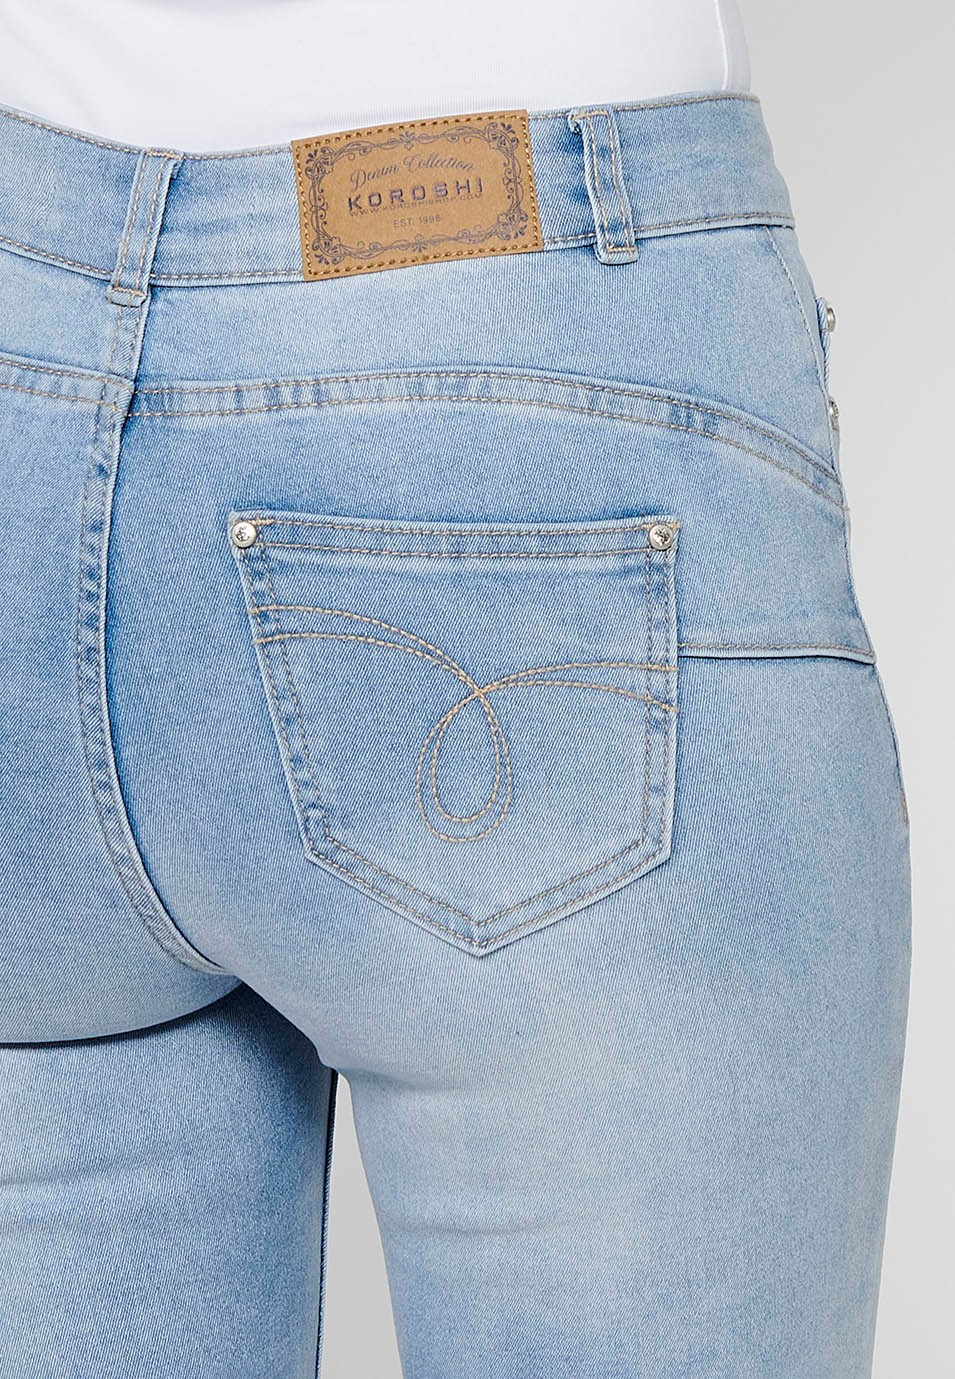 Pantalon long en jean slim avec fermeture éclair sur le devant et détails brodés de fleurs bleu clair pour femme 9